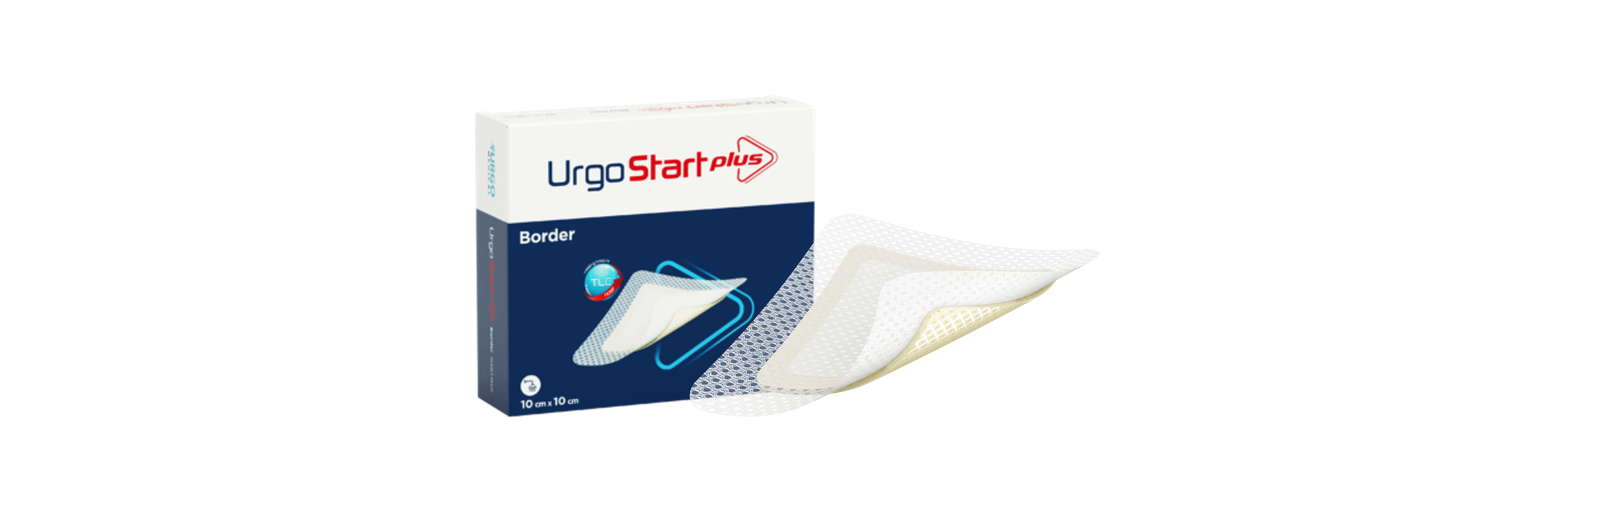 Urgo - Für jede Wunde eine innovative Lösung